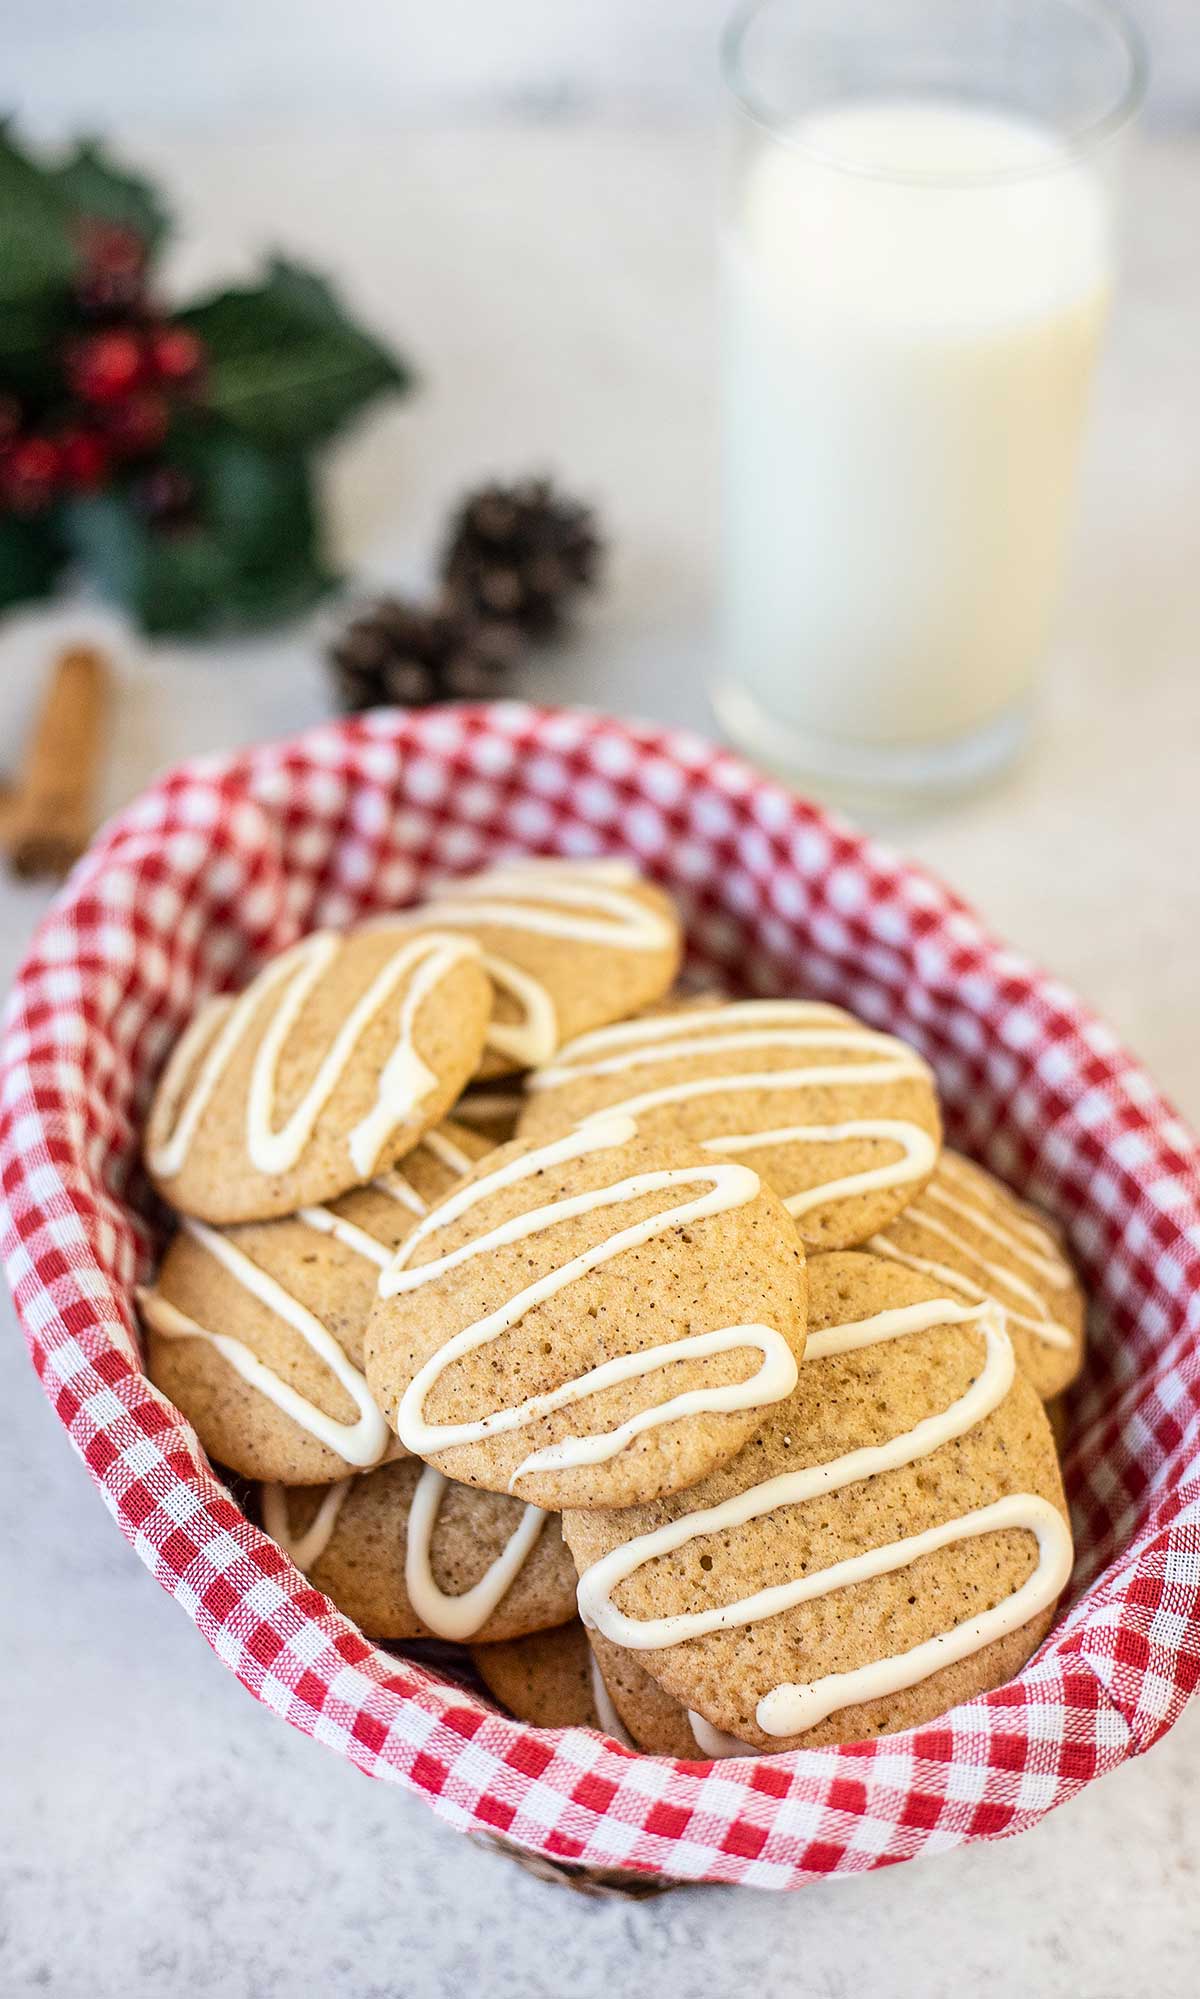 Eggnog cookies in a gift basket.